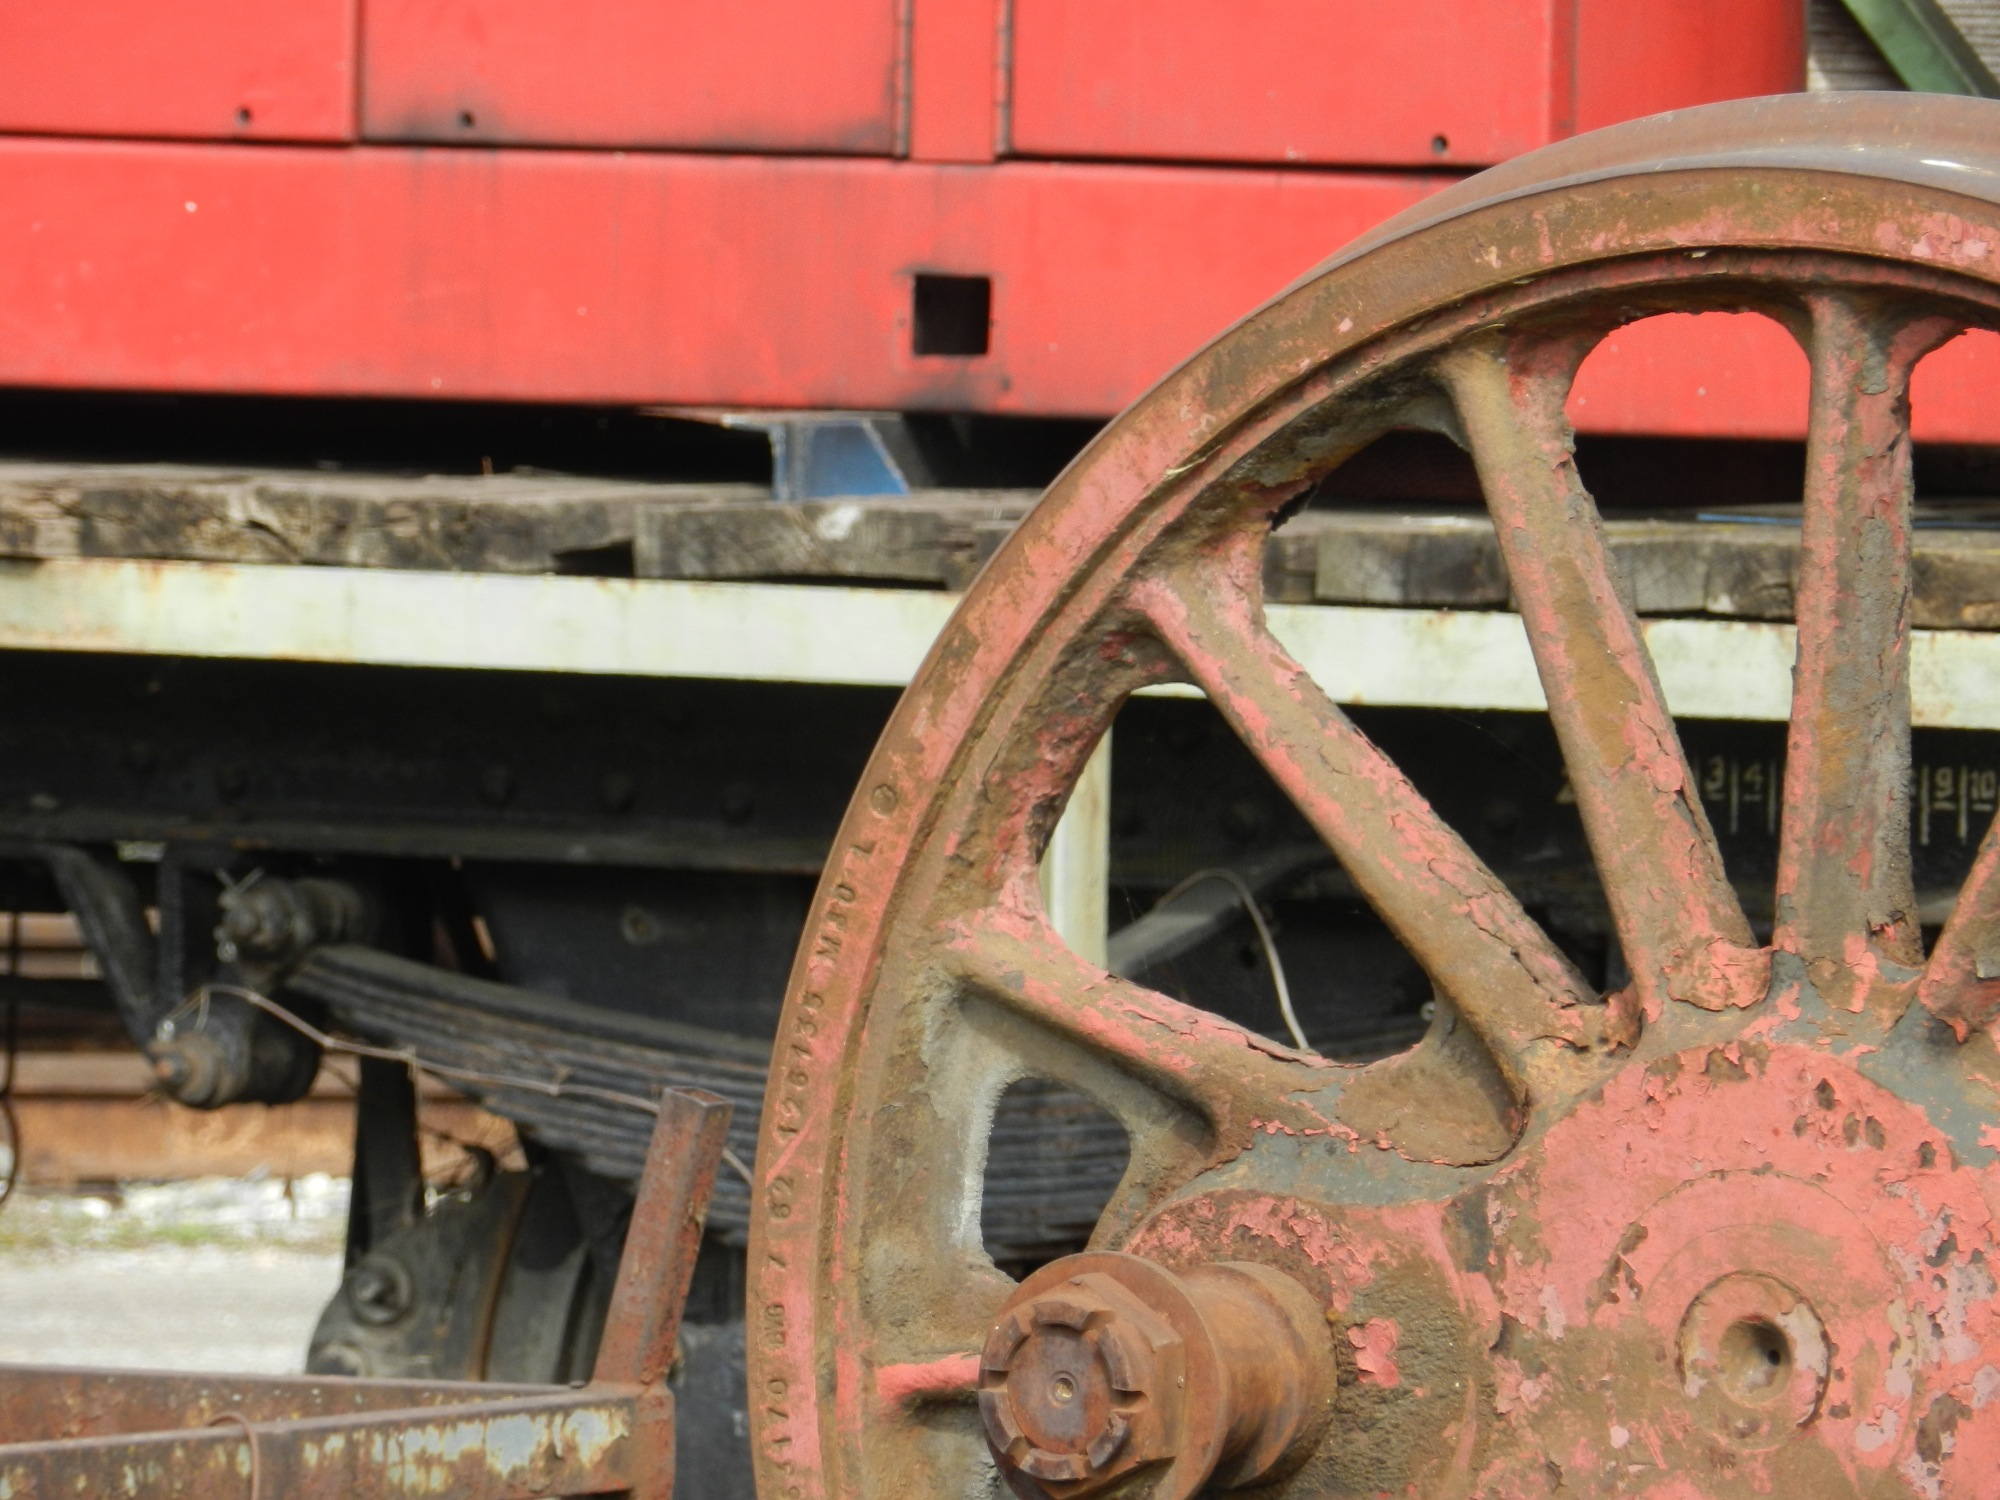 rostiges Detail eines alten Eisenbahnrads